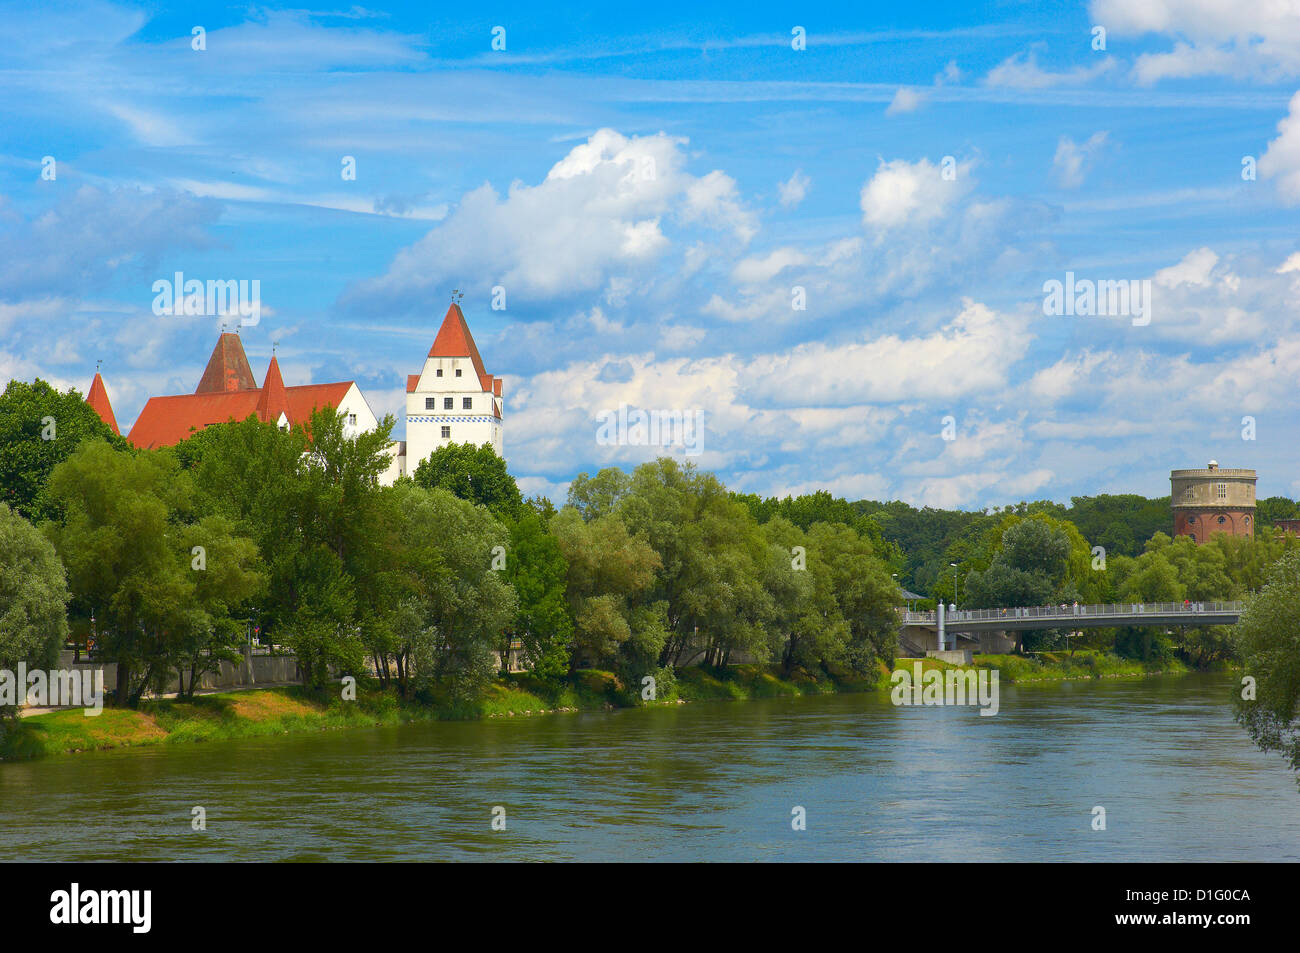 Ingolstadt, New Castle, Neues Schloss castle, Danube river, Upper Bavaria, Bavaria, Germany, Stock Photo